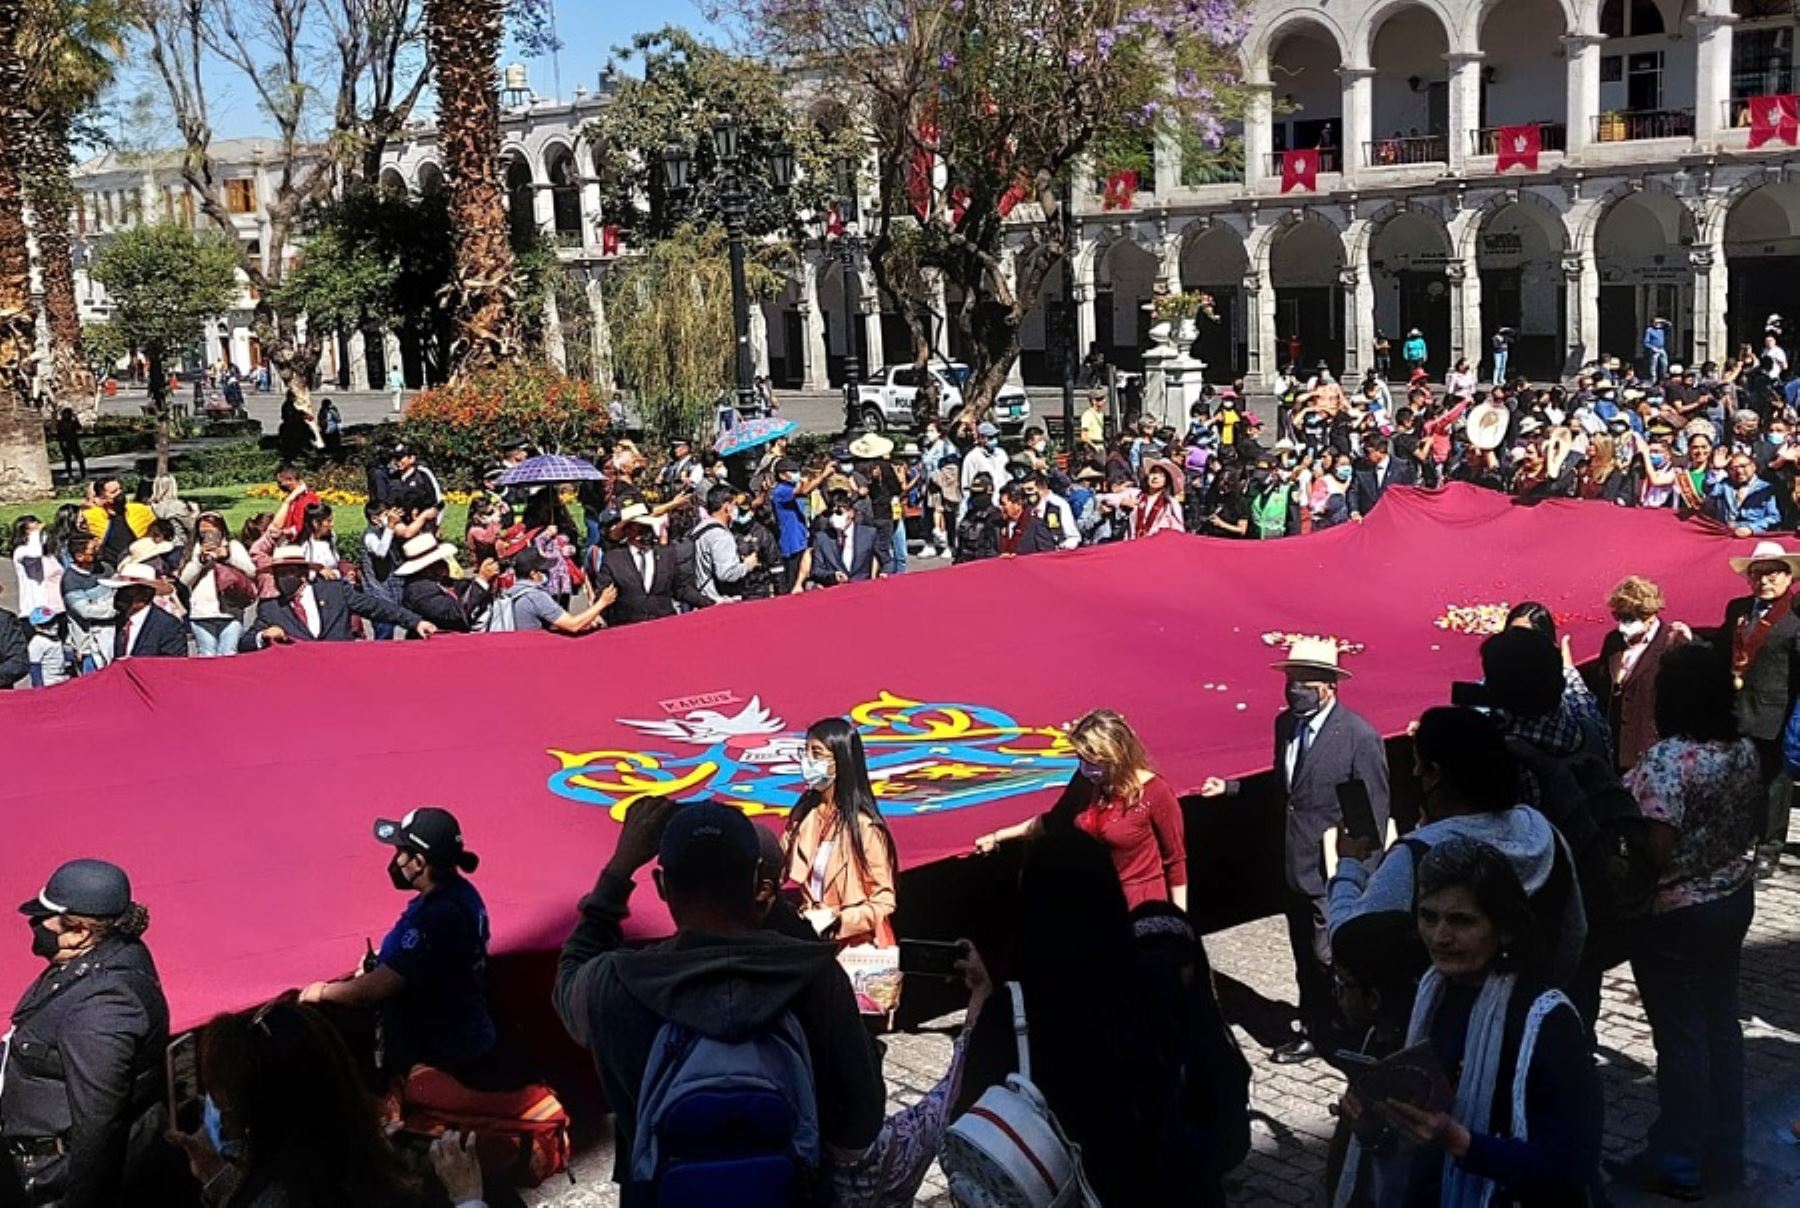 A ritmo del carnaval de Arequipa se celebró hoy el tradicional Paseo del Estandarte de Arequipa, por las calles de la ciudad hasta llegar a la plaza de Armas, en el marco de los festejos por su 482 aniversario.